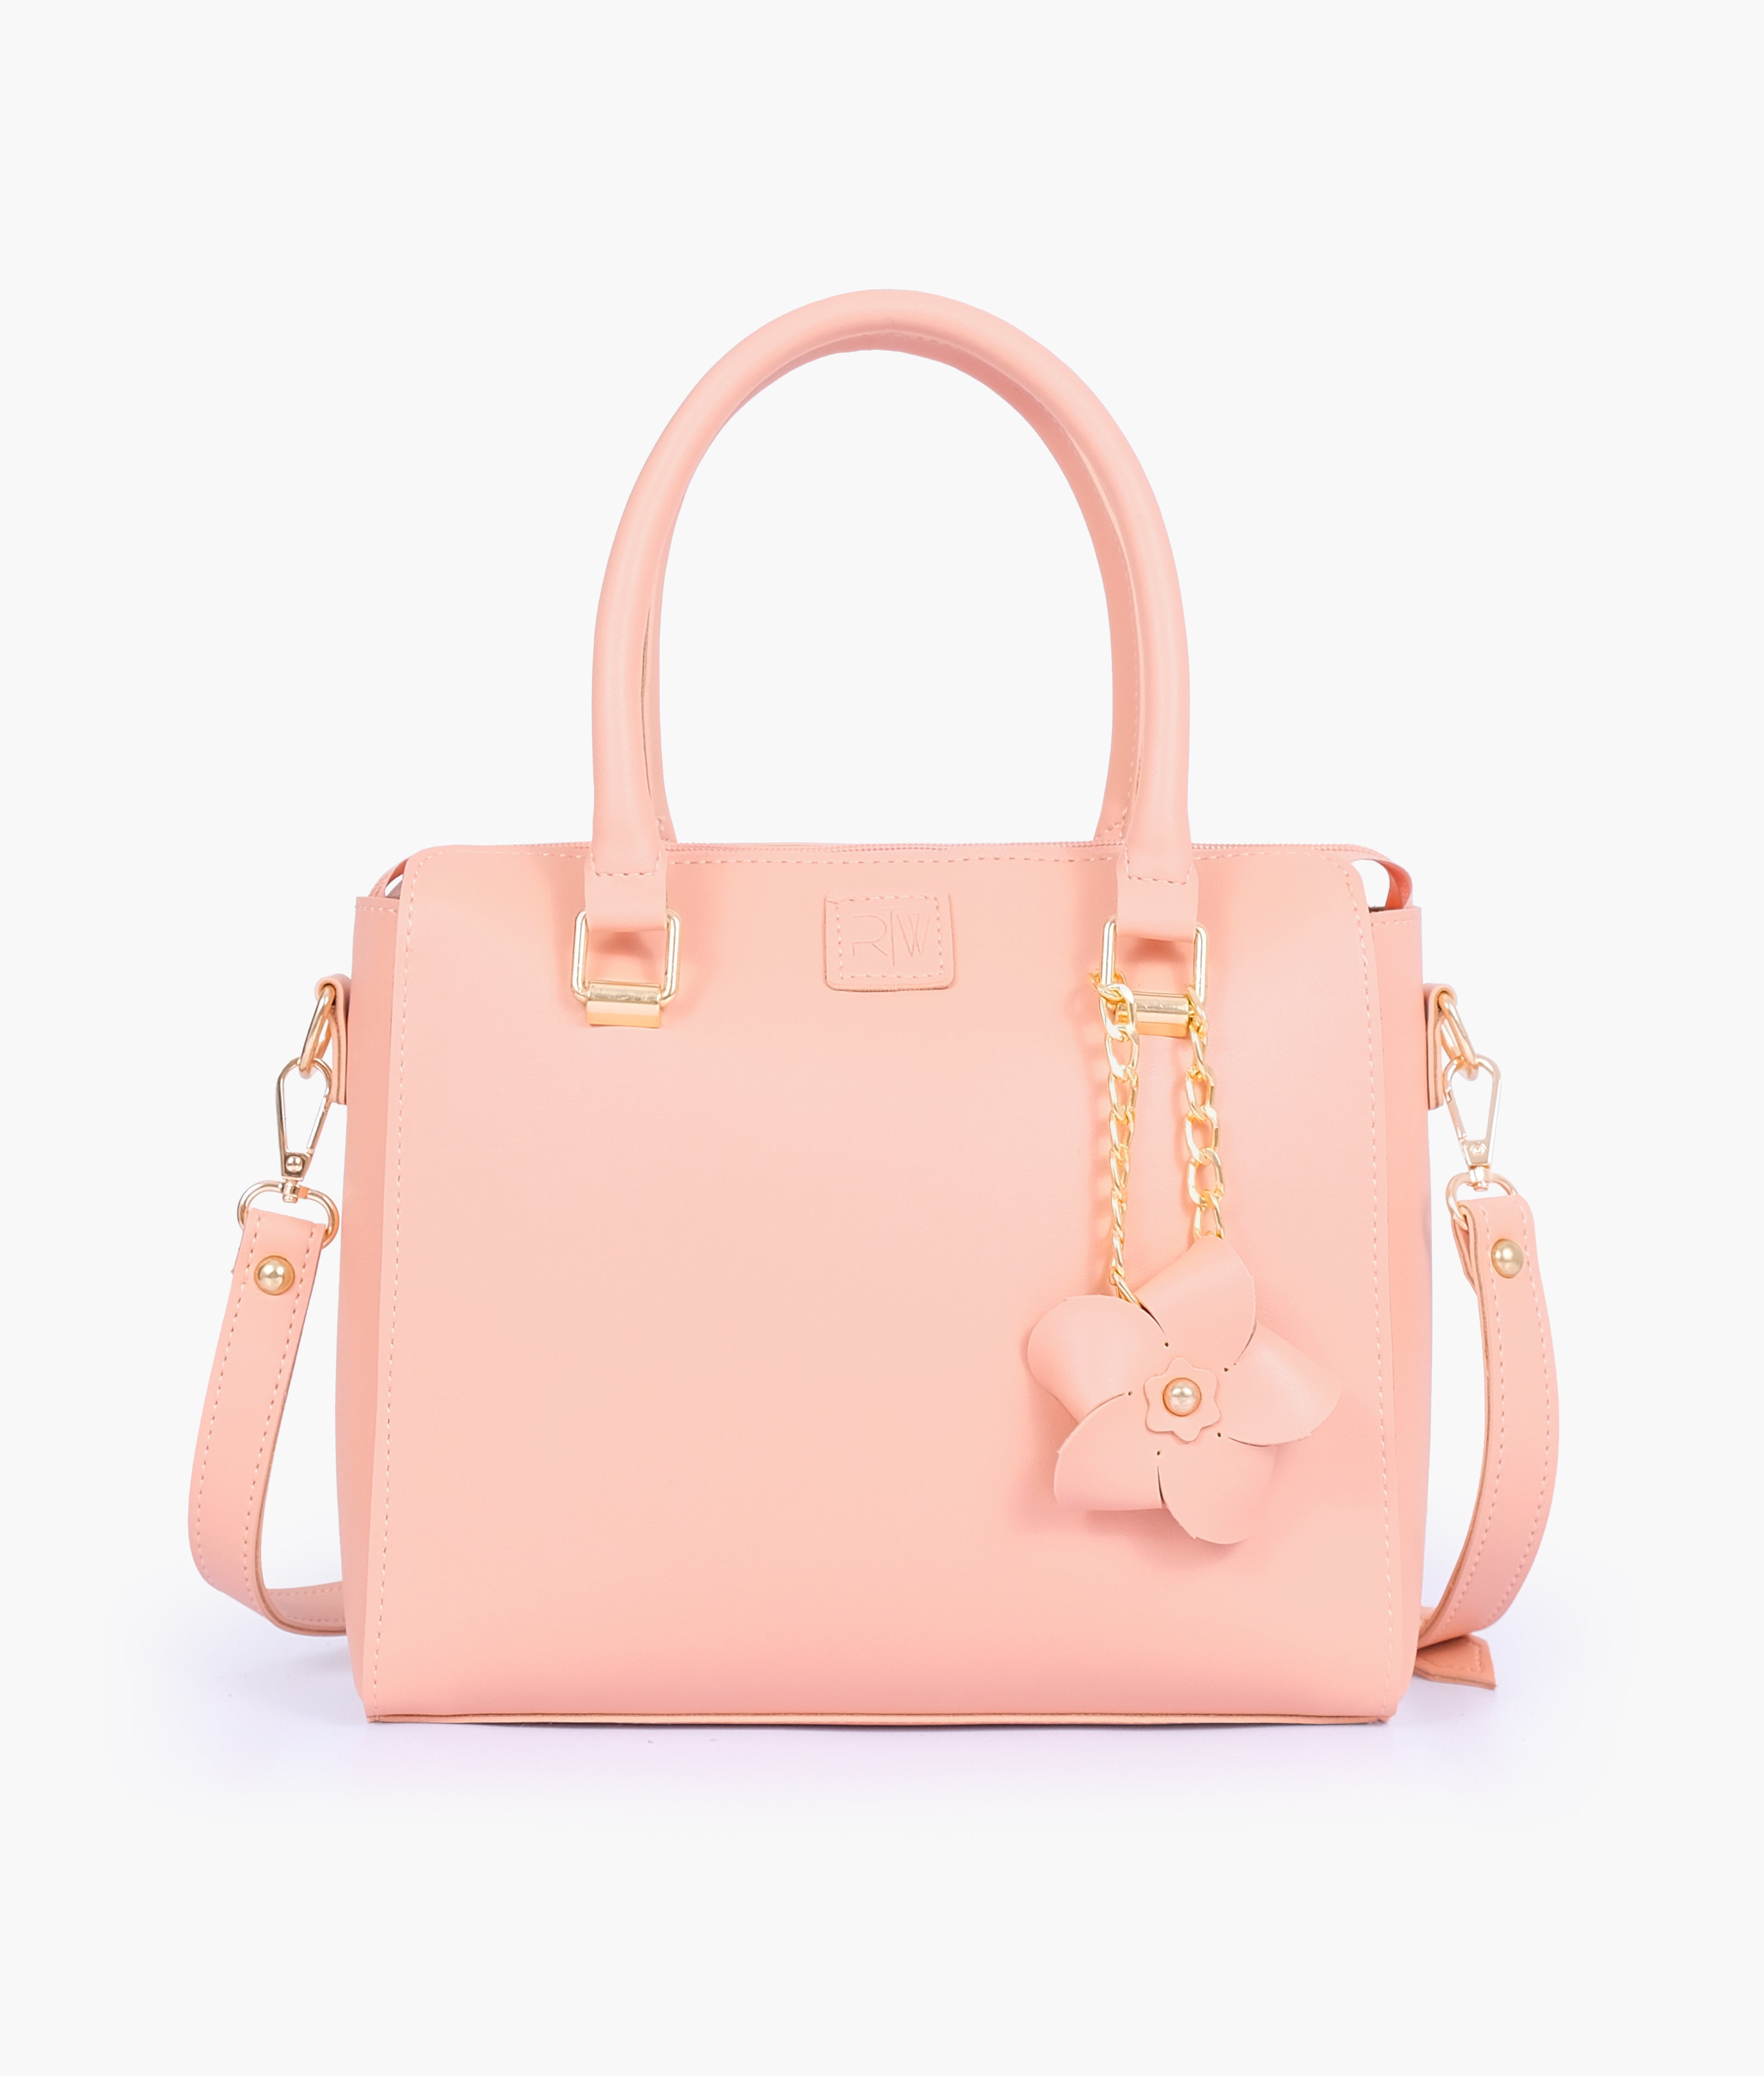 Peach handbag with flower charm